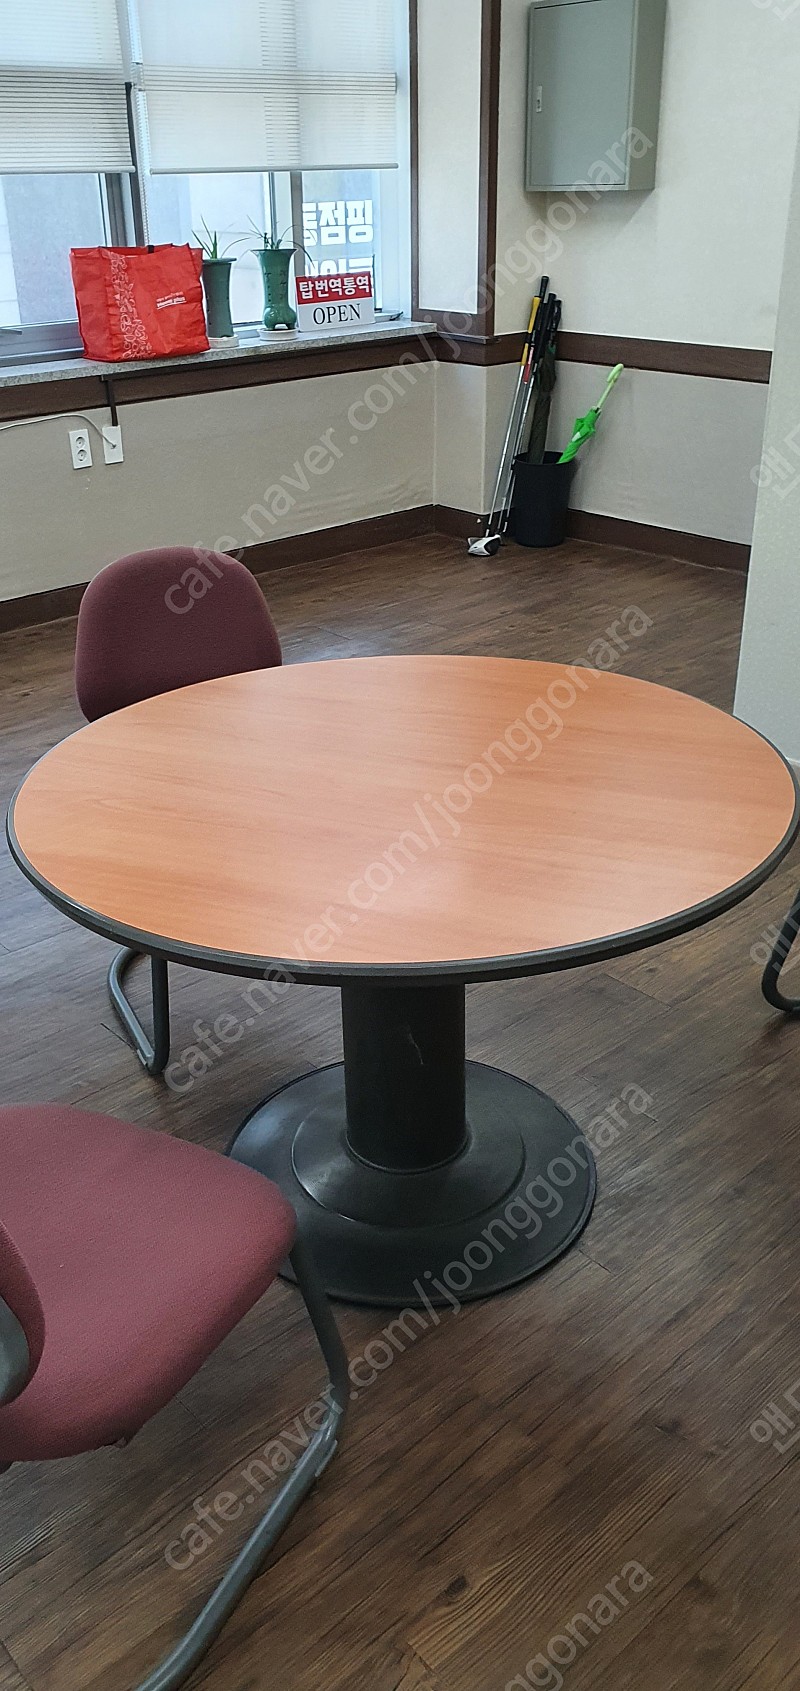 원탁 테이블 1개, 의자 3개